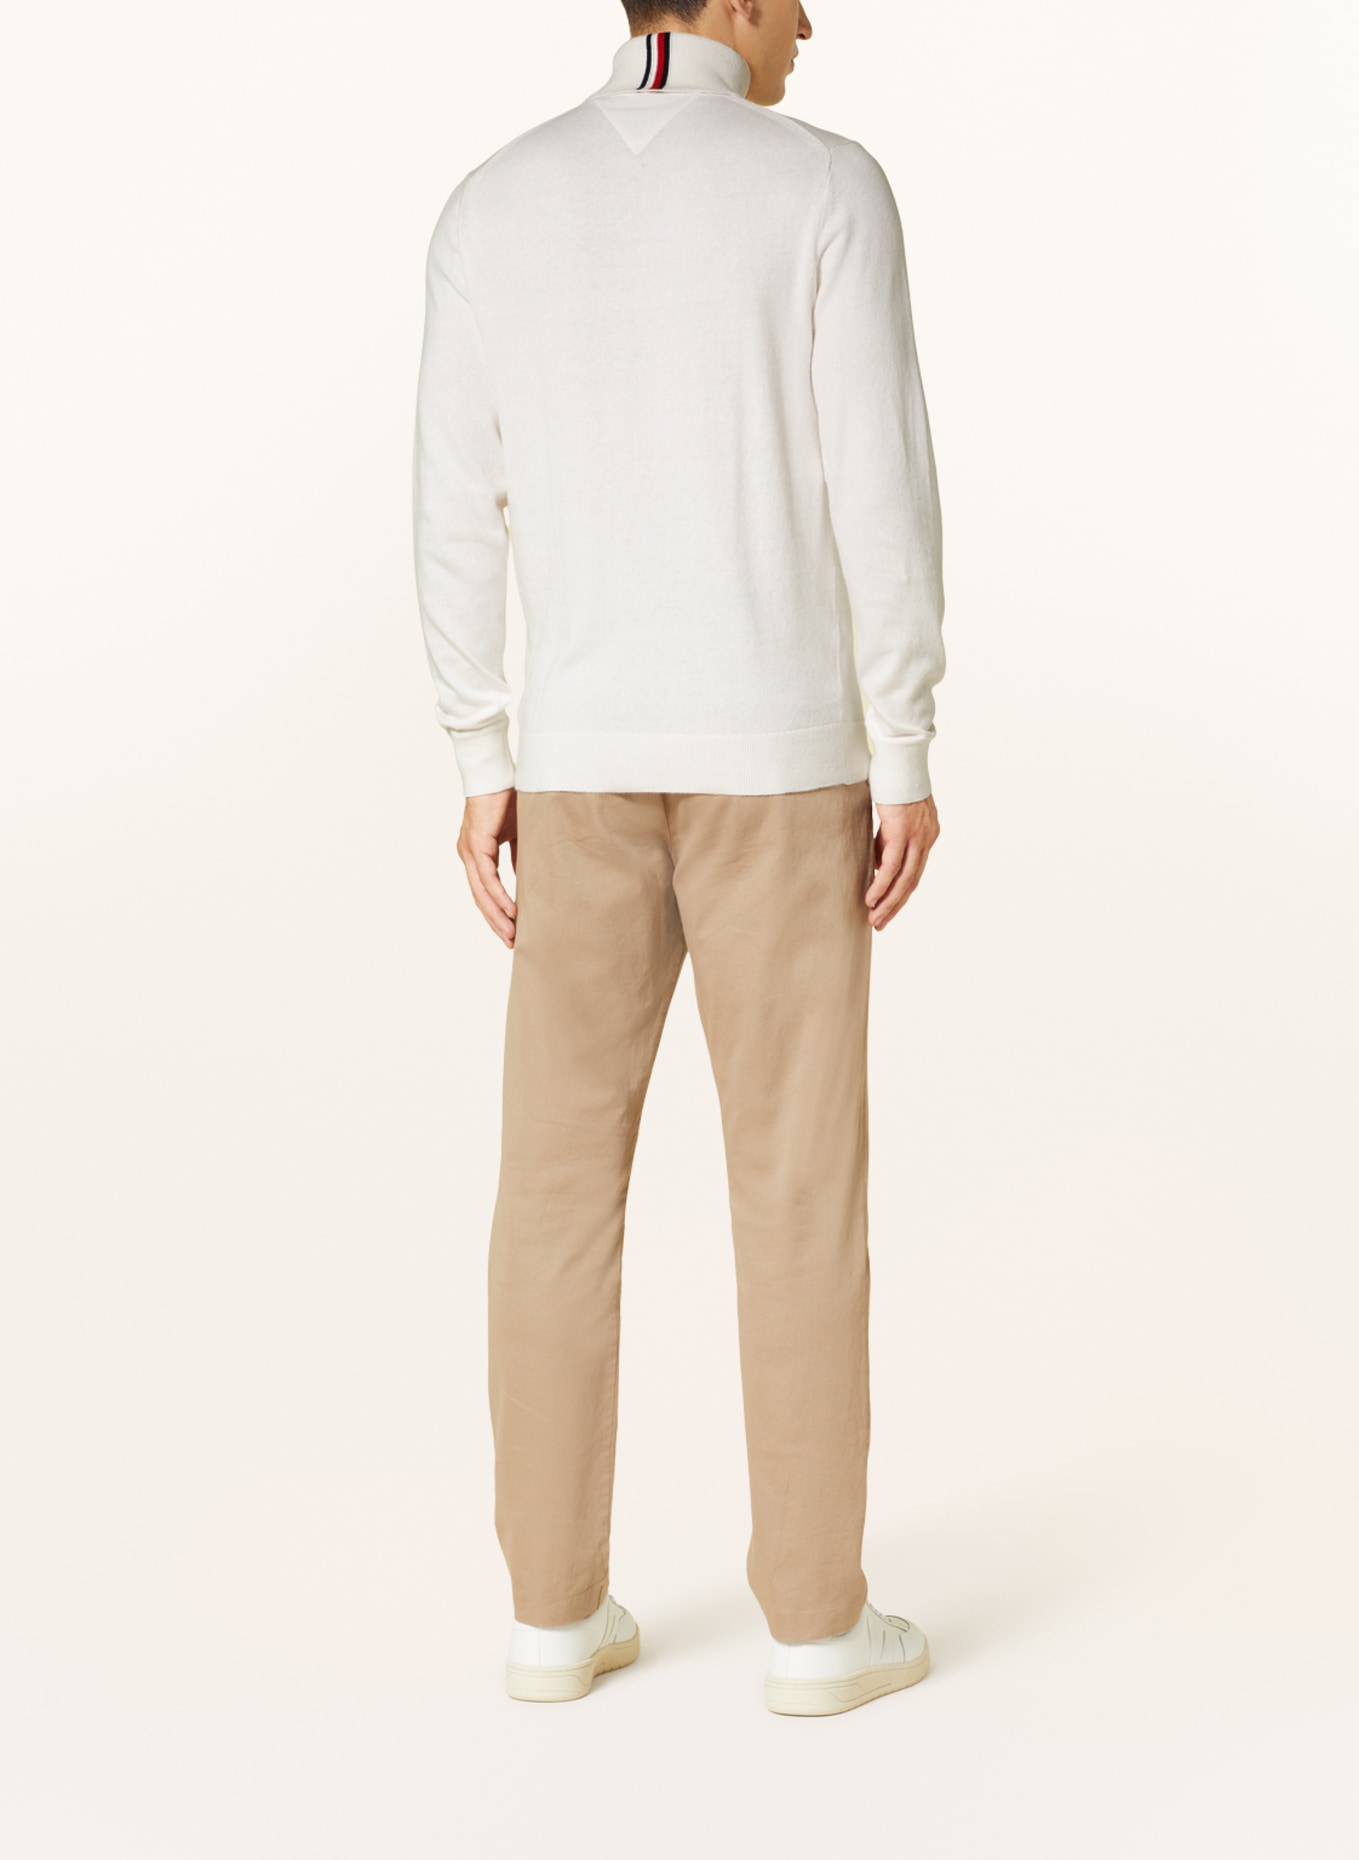 TOMMY HILFIGER Turtleneck sweater, Color: WHITE (Image 3)